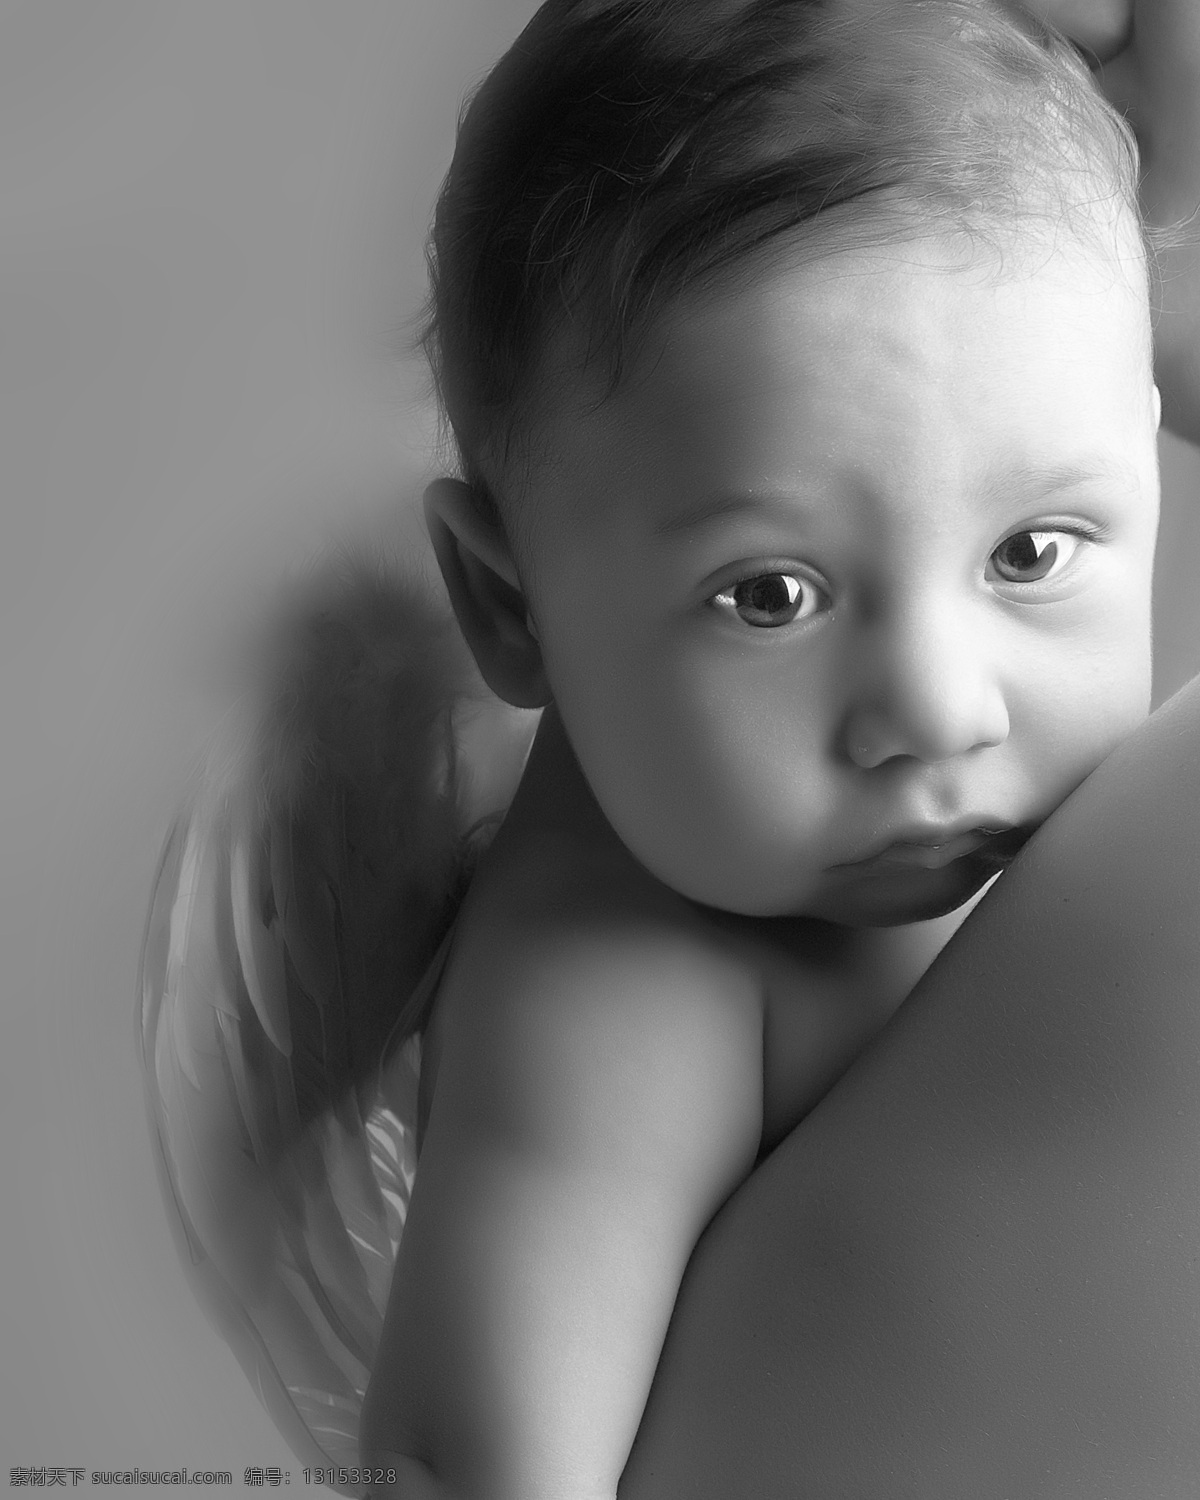 宝宝黑白照 宝宝 可爱 儿童 艺术照 黑白照 微笑 儿童幼儿 人物图库